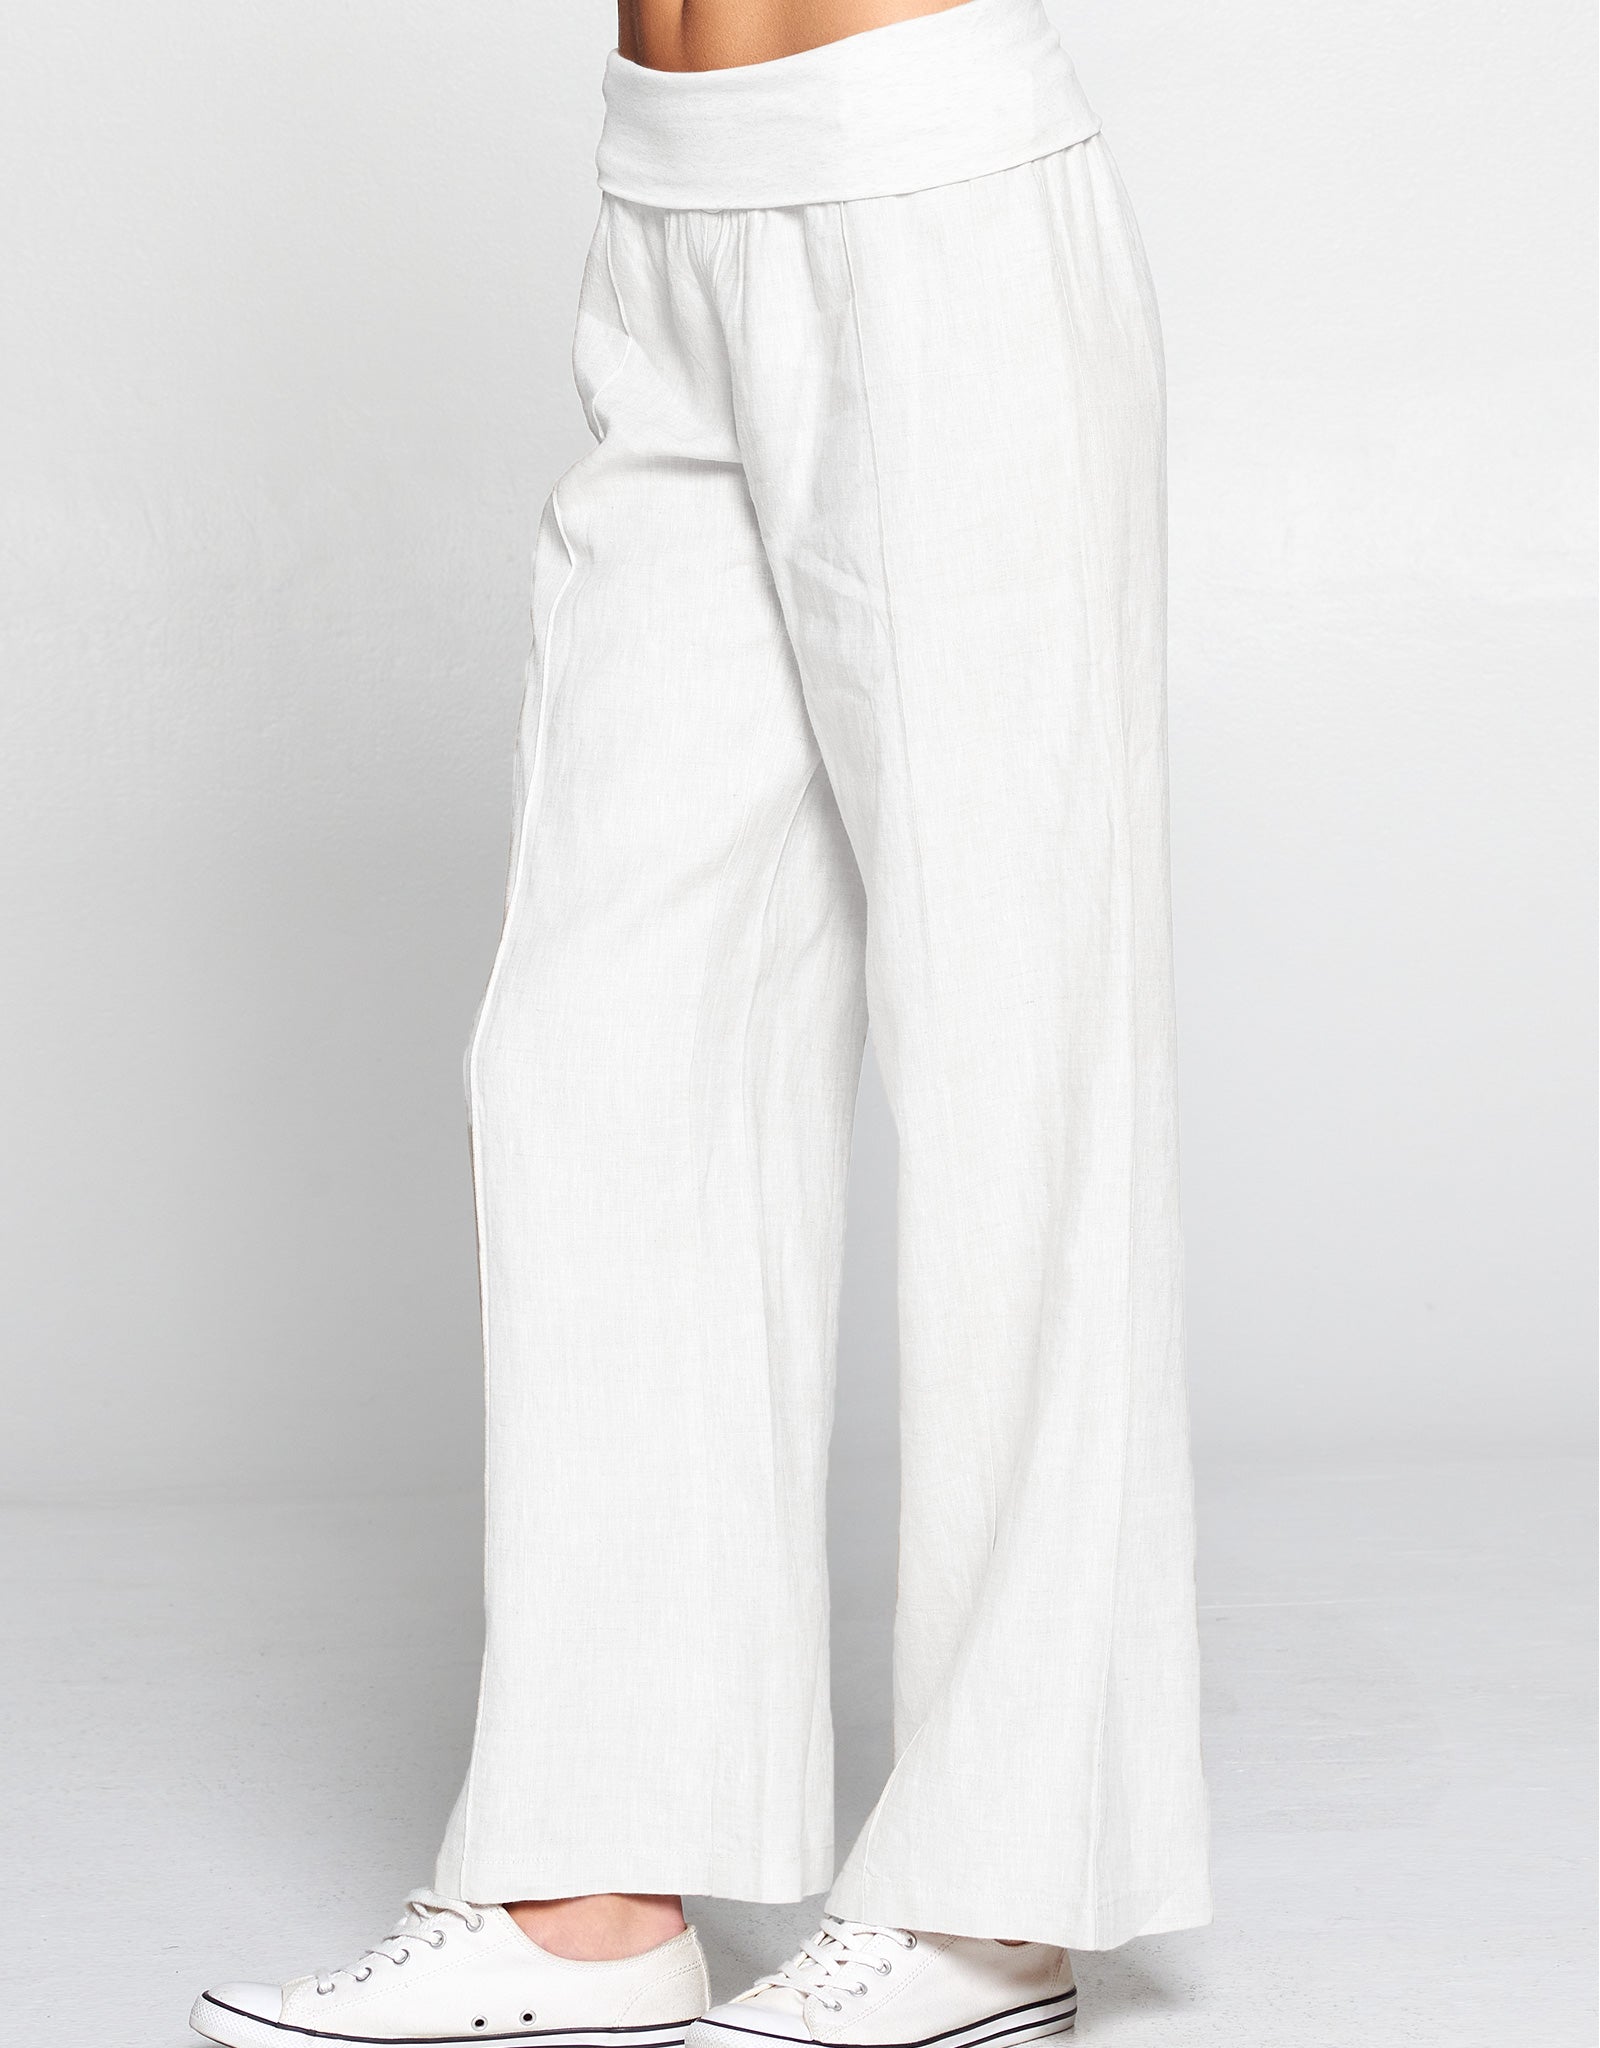 Linen Foldover Waist Pant, 5 Colors